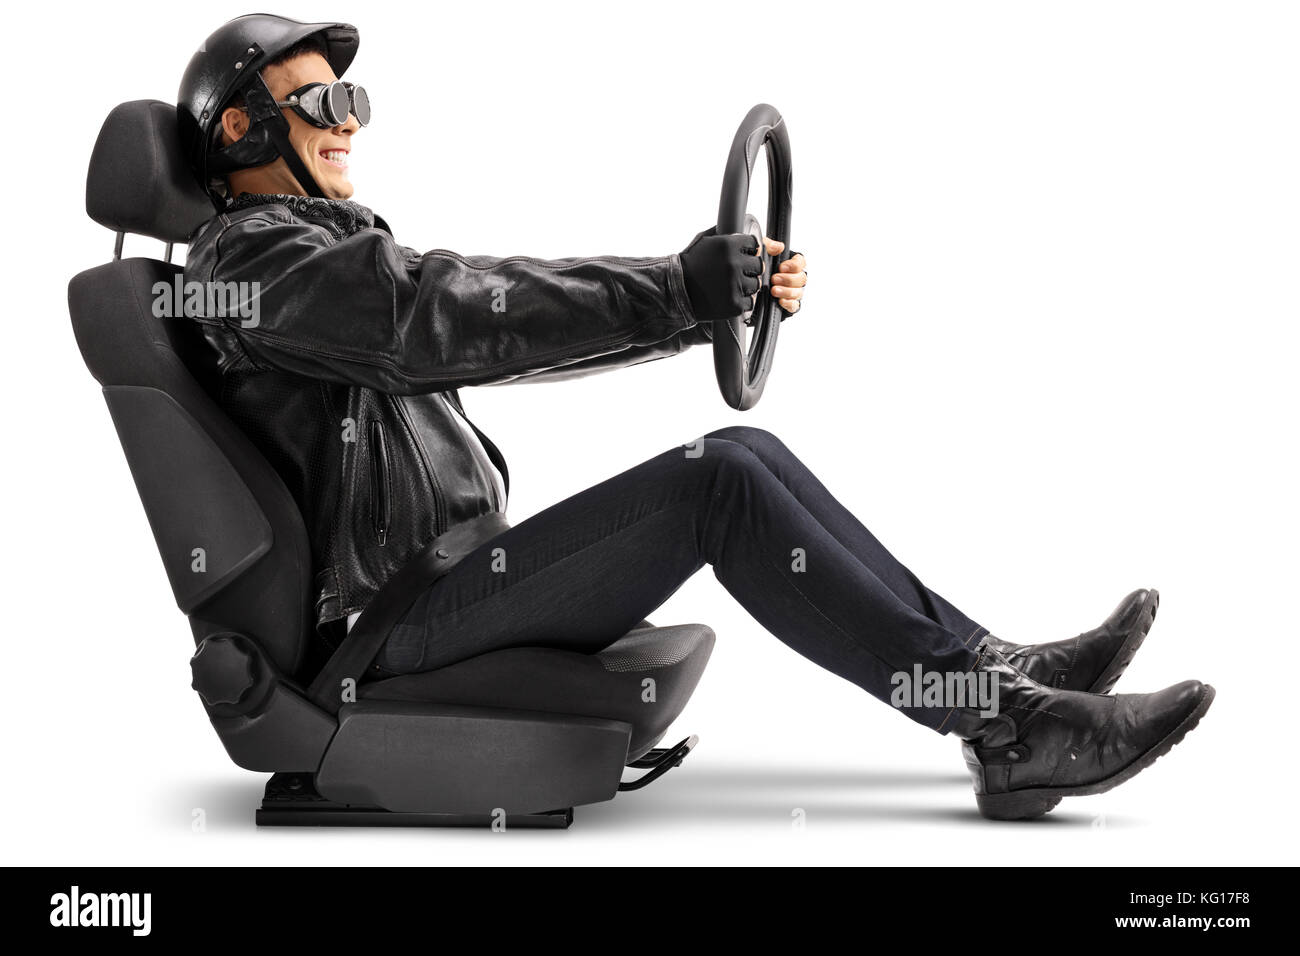 Biker assis dans un siège de voiture et tenant un volant isolé sur fond blanc Banque D'Images